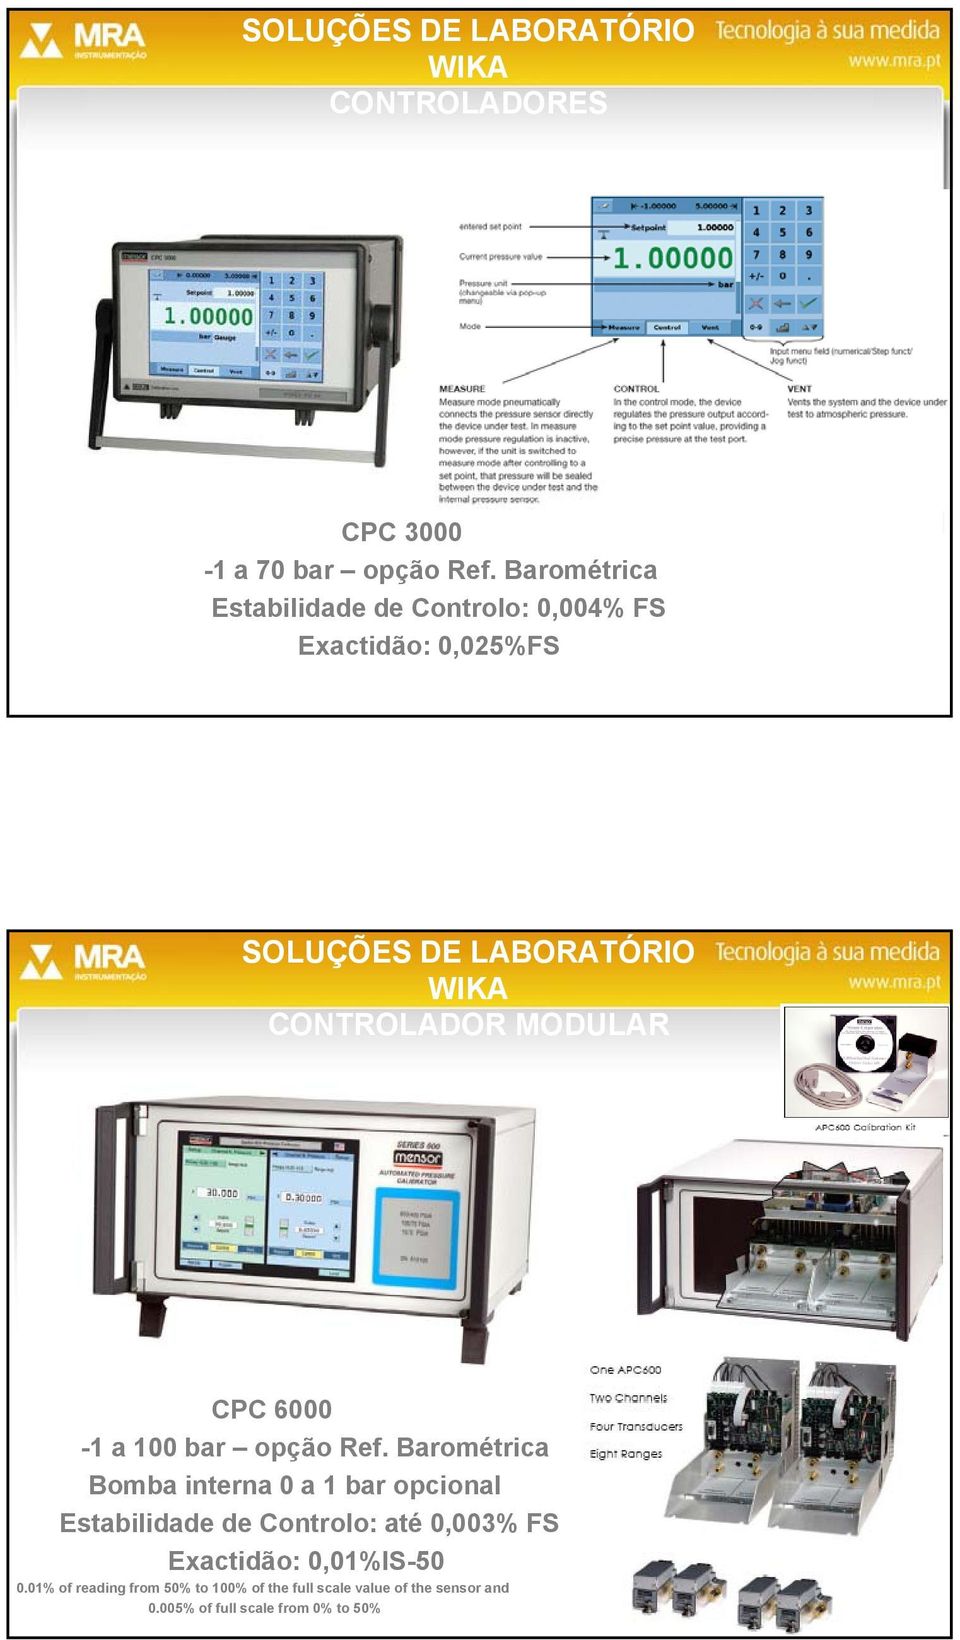 MODULAR CPC 6000 CPC 6000-1 a 100 bar opção Ref.